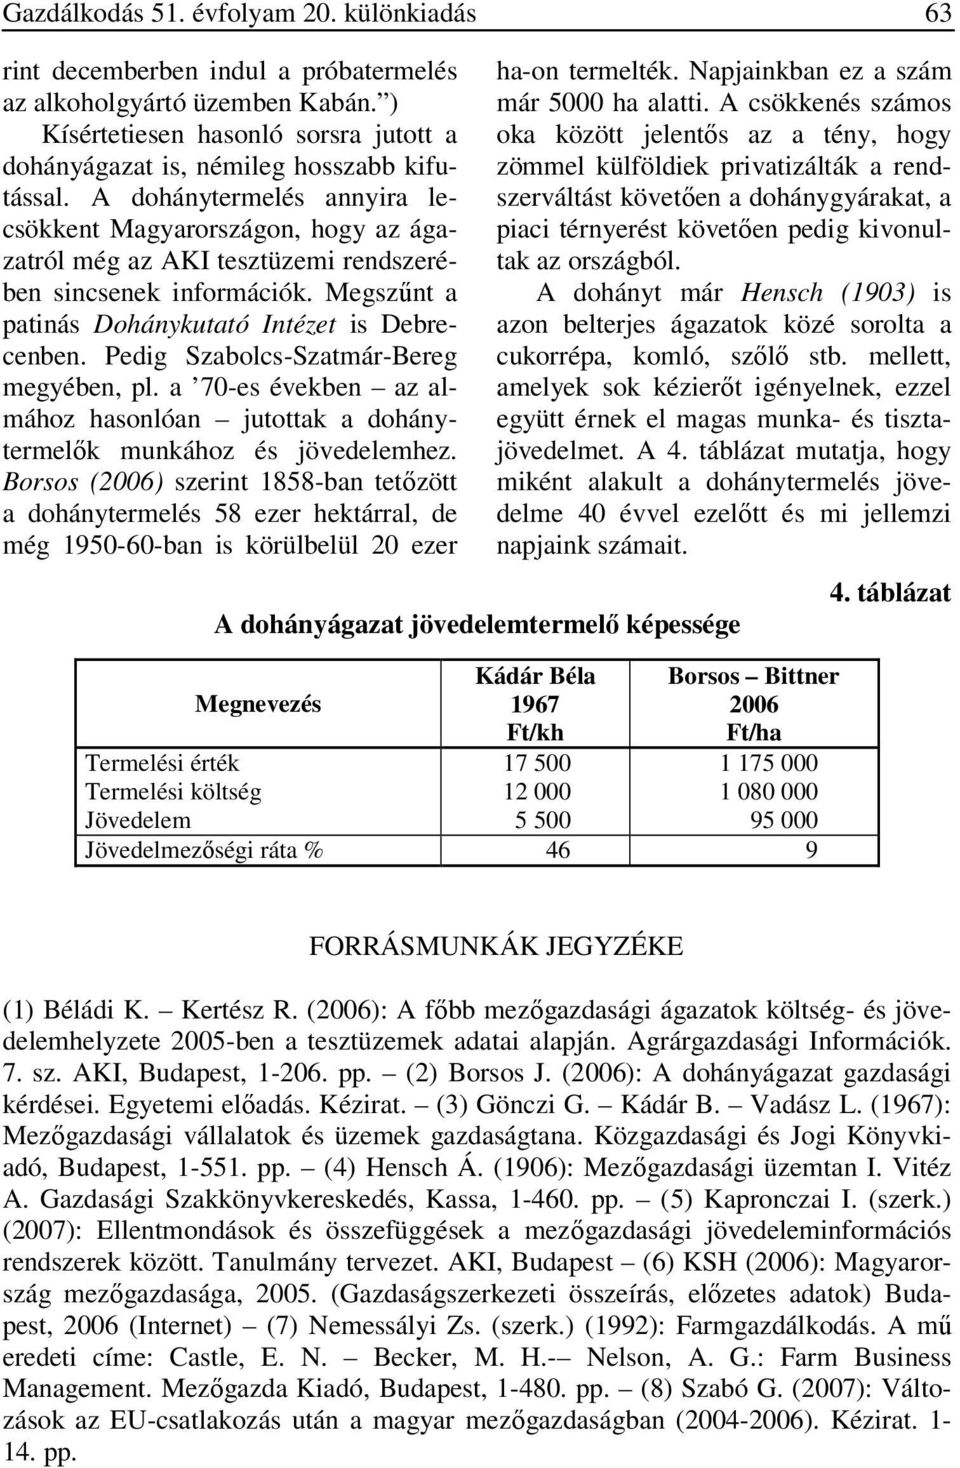 Pedig Szabolcs-Szatmár-Bereg megyében, pl. a 70-es években az almához hasonlóan jutottak a dohánytermelők munkához és jövedelemhez.